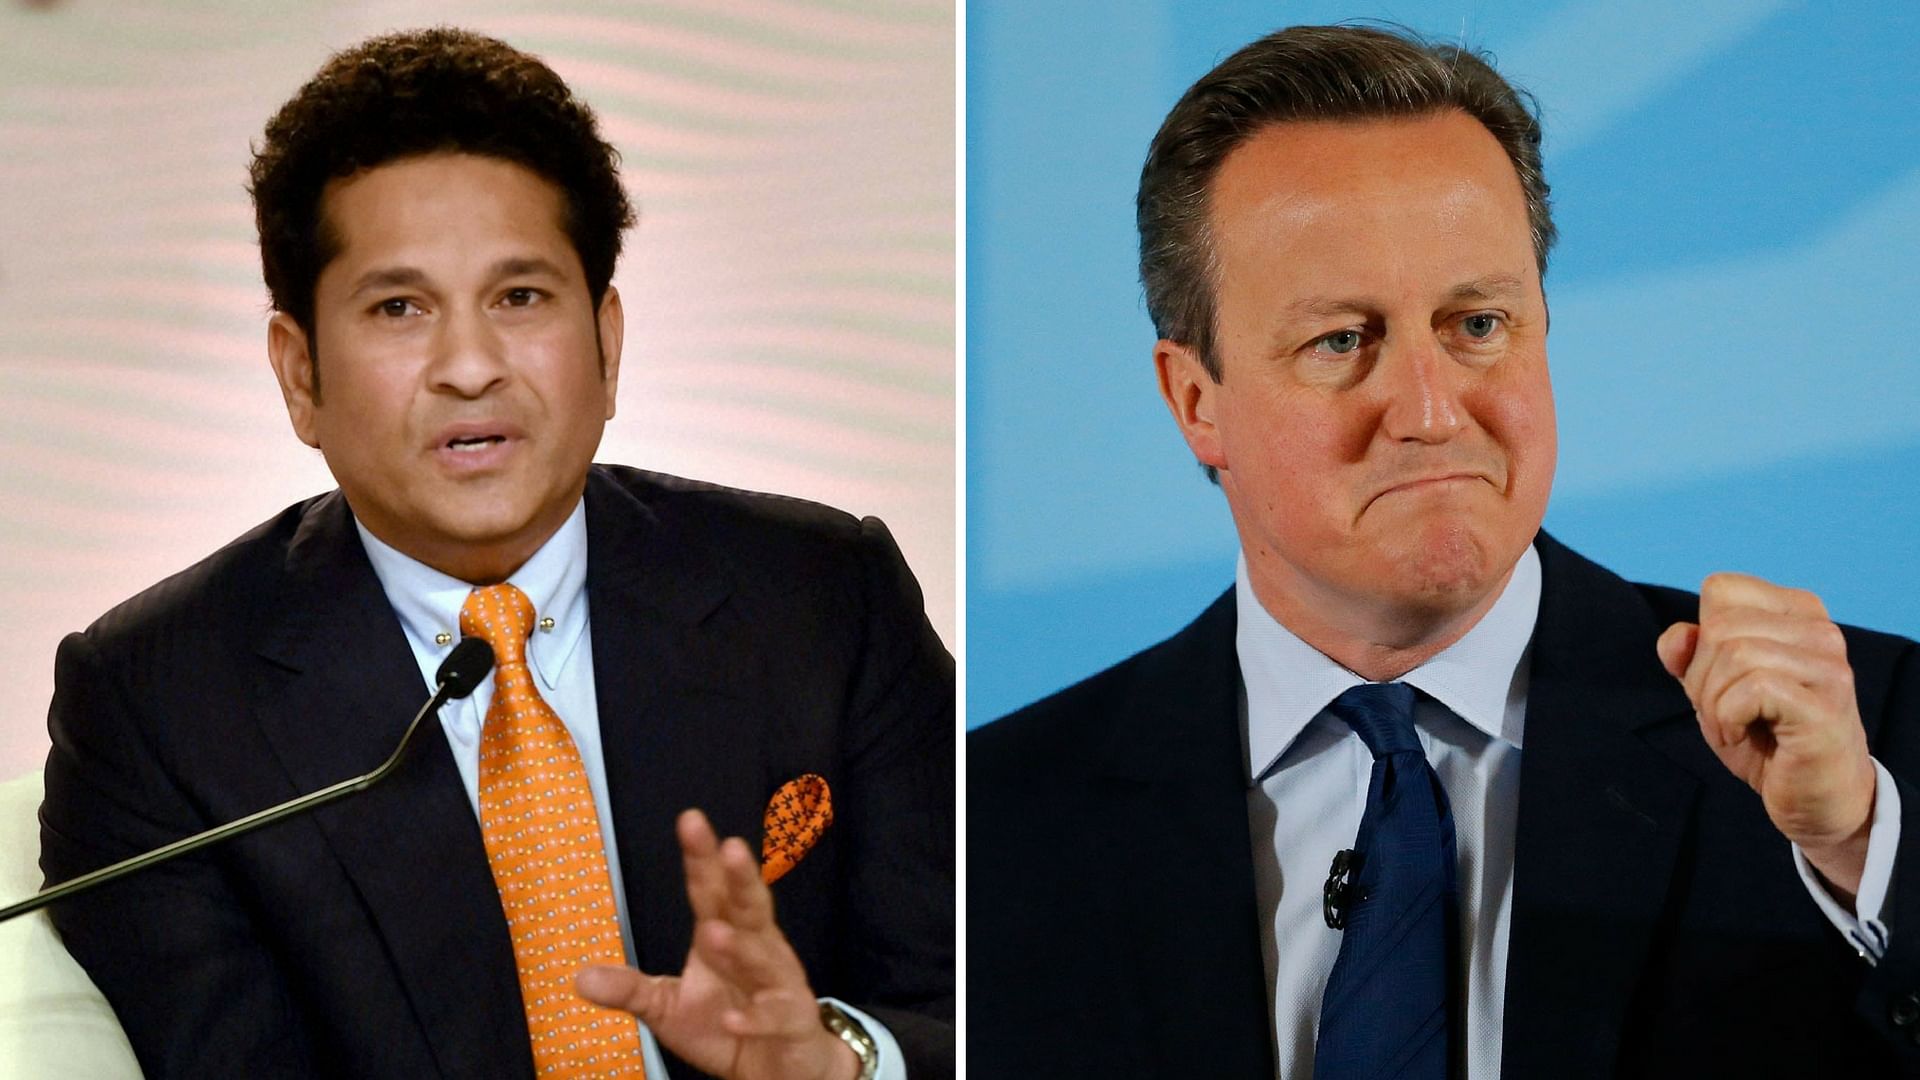 Sachin and David Cameron spoke at the Hindustan Times Leadership Summit. (Photo: PTI/AP)